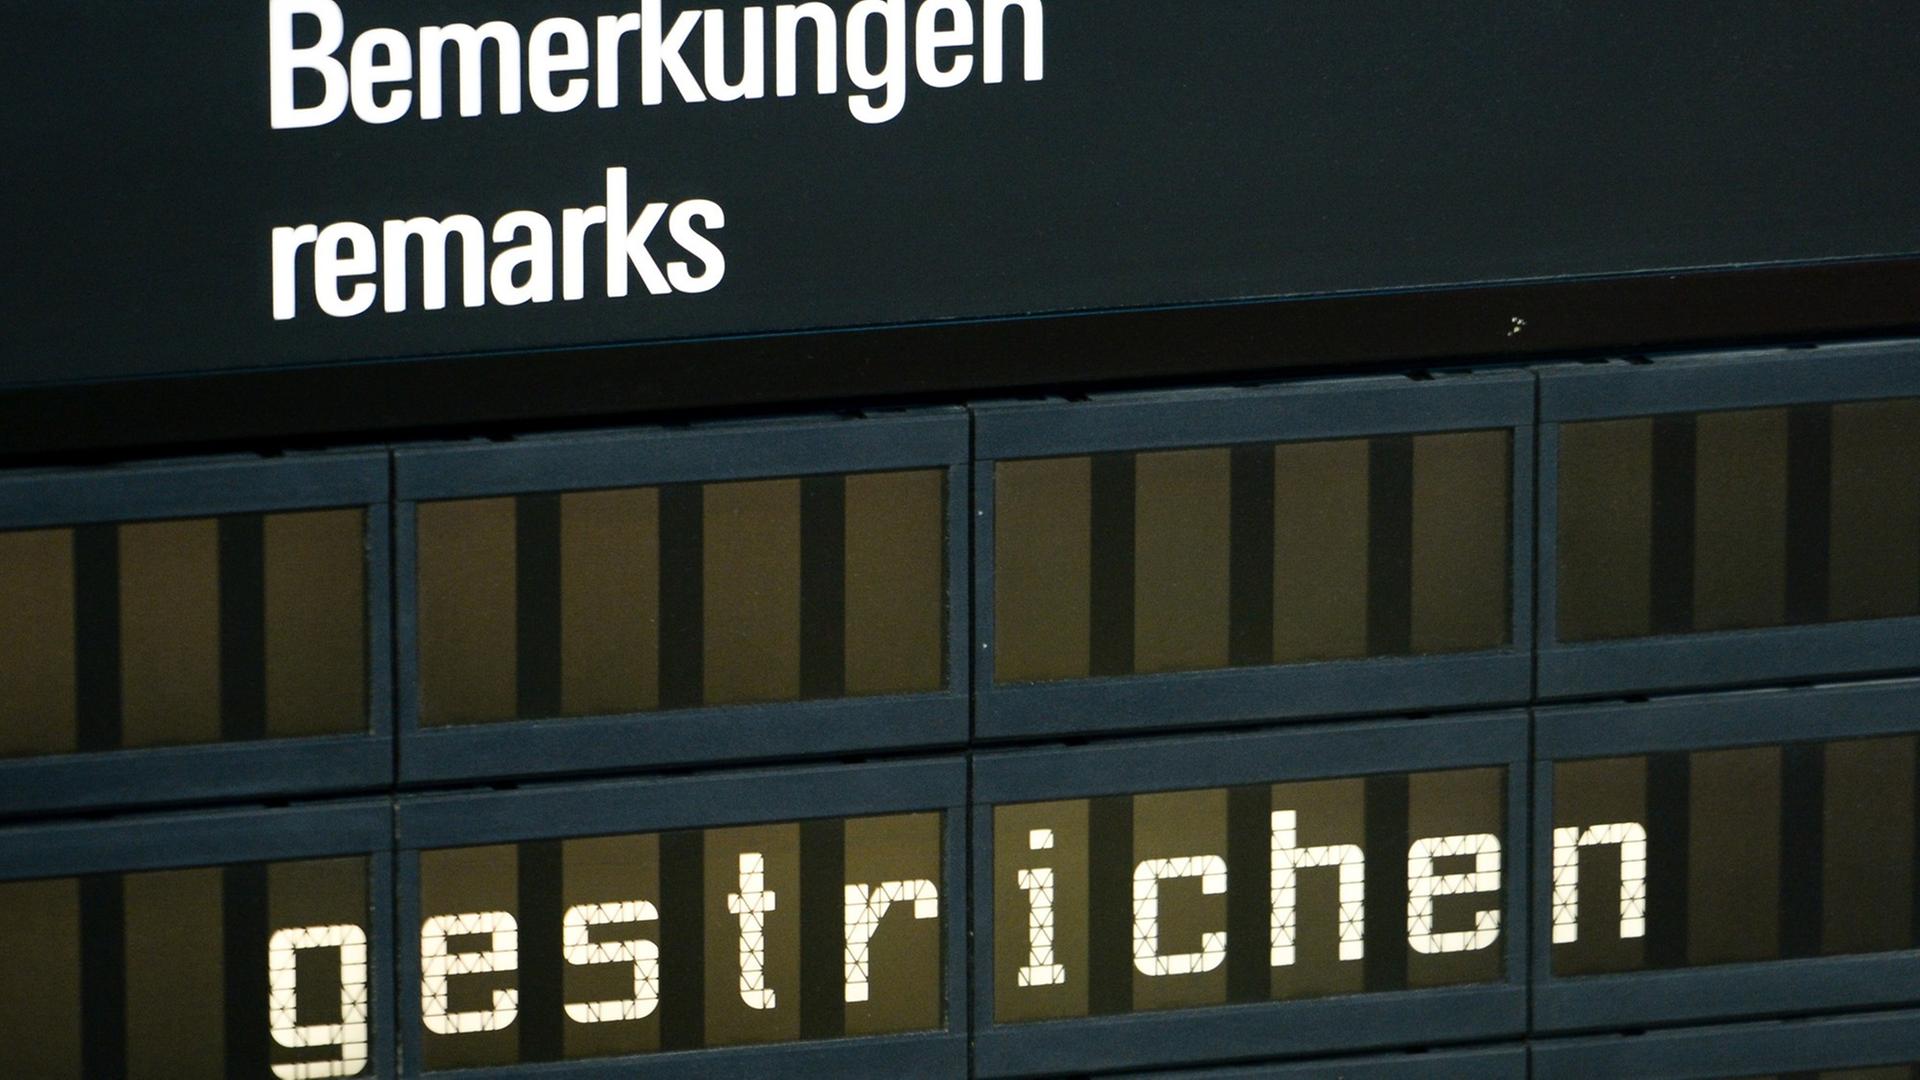 Ausschnitt einer Anzeigetafel auf dem Flughafen mit den Worten "Bemerkungen/remarks: gestrichen"